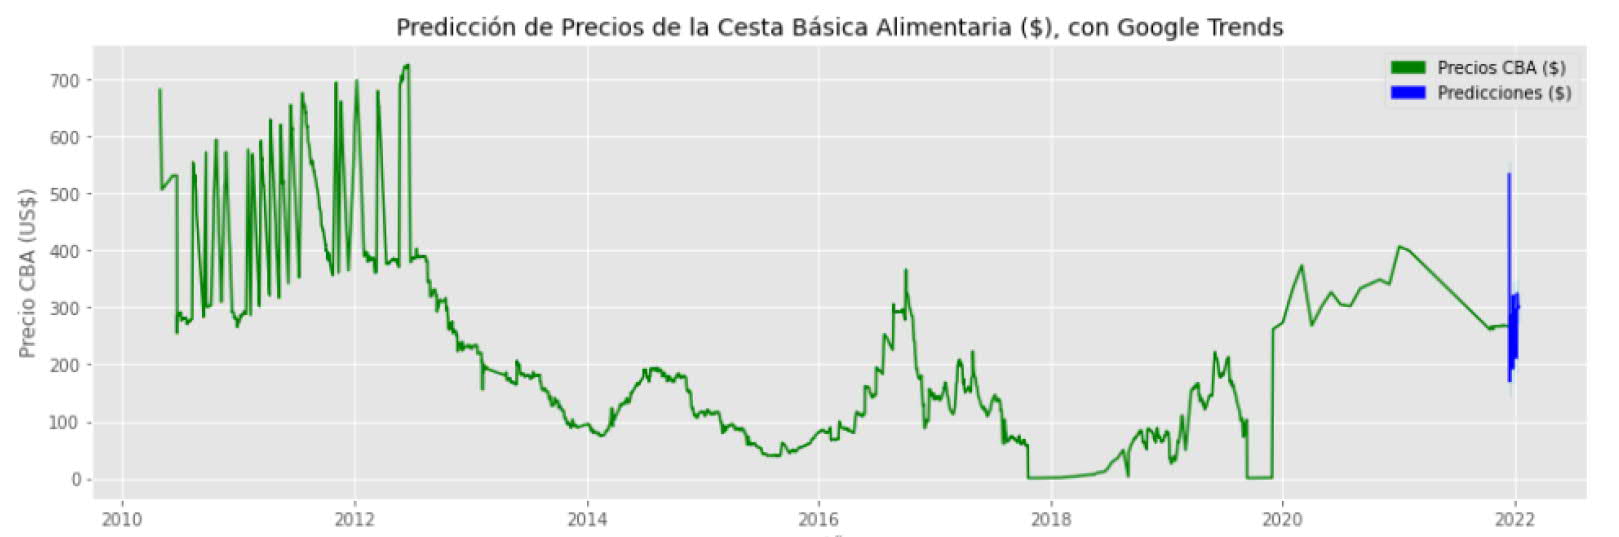 Predicción real del precio de los alimentos usando la metodología ARIMA y google trends